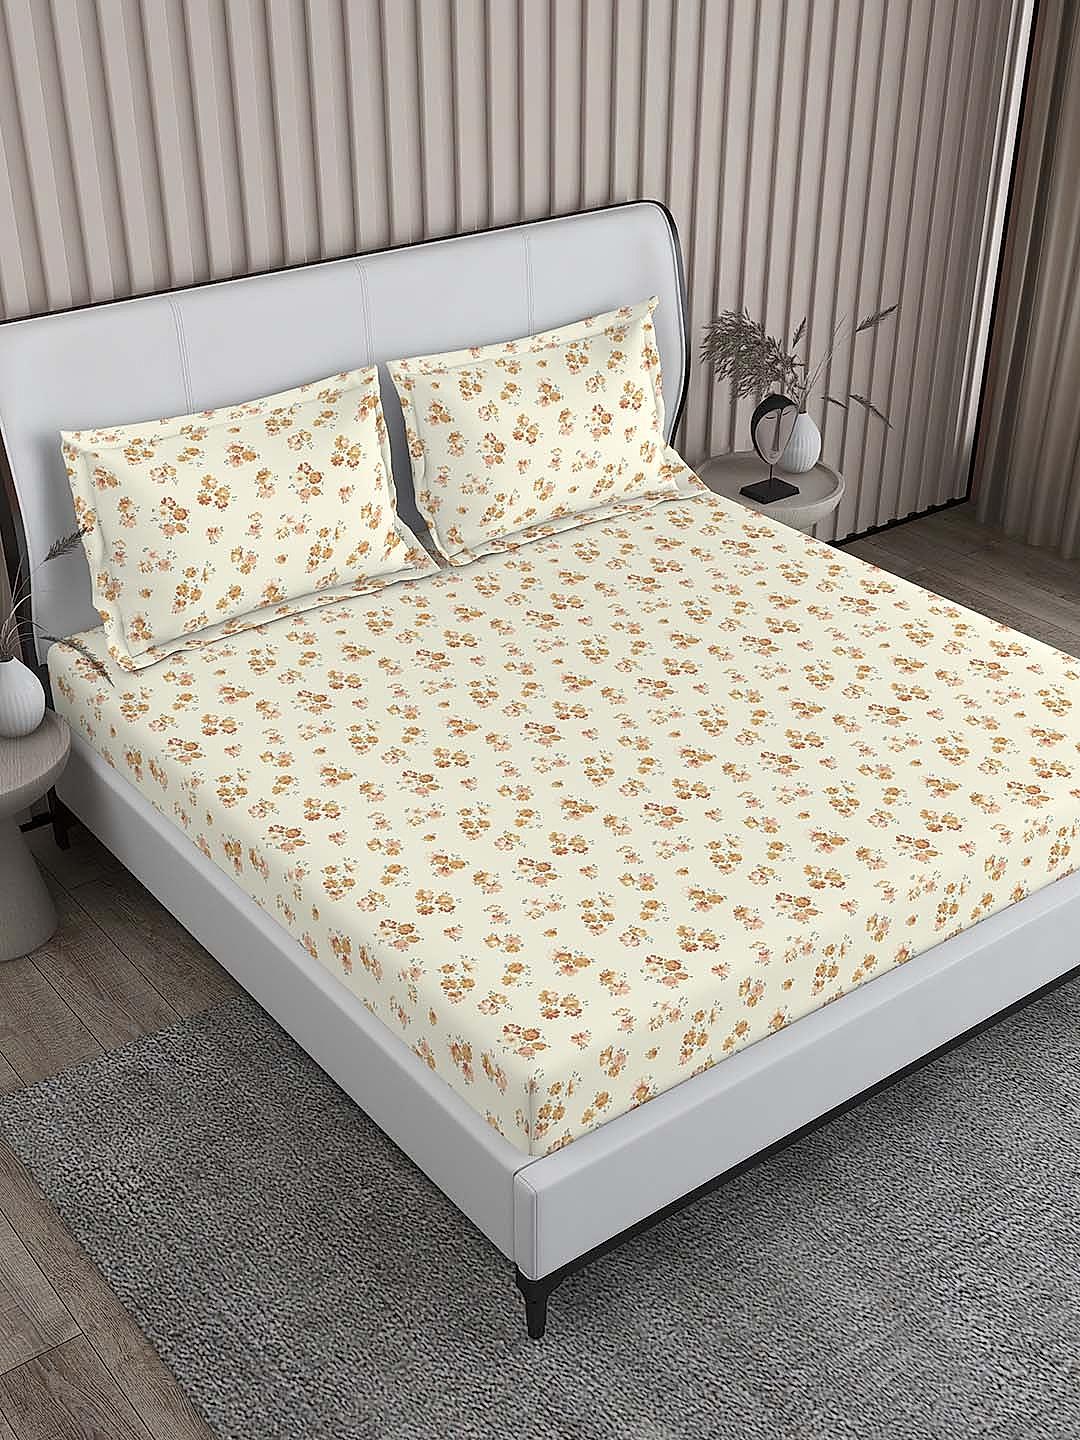 Regent Park 200 TC Cotton-TENCEL™ Super Fine Pale Yellow Colored Floral Print King Bed Sheet Set